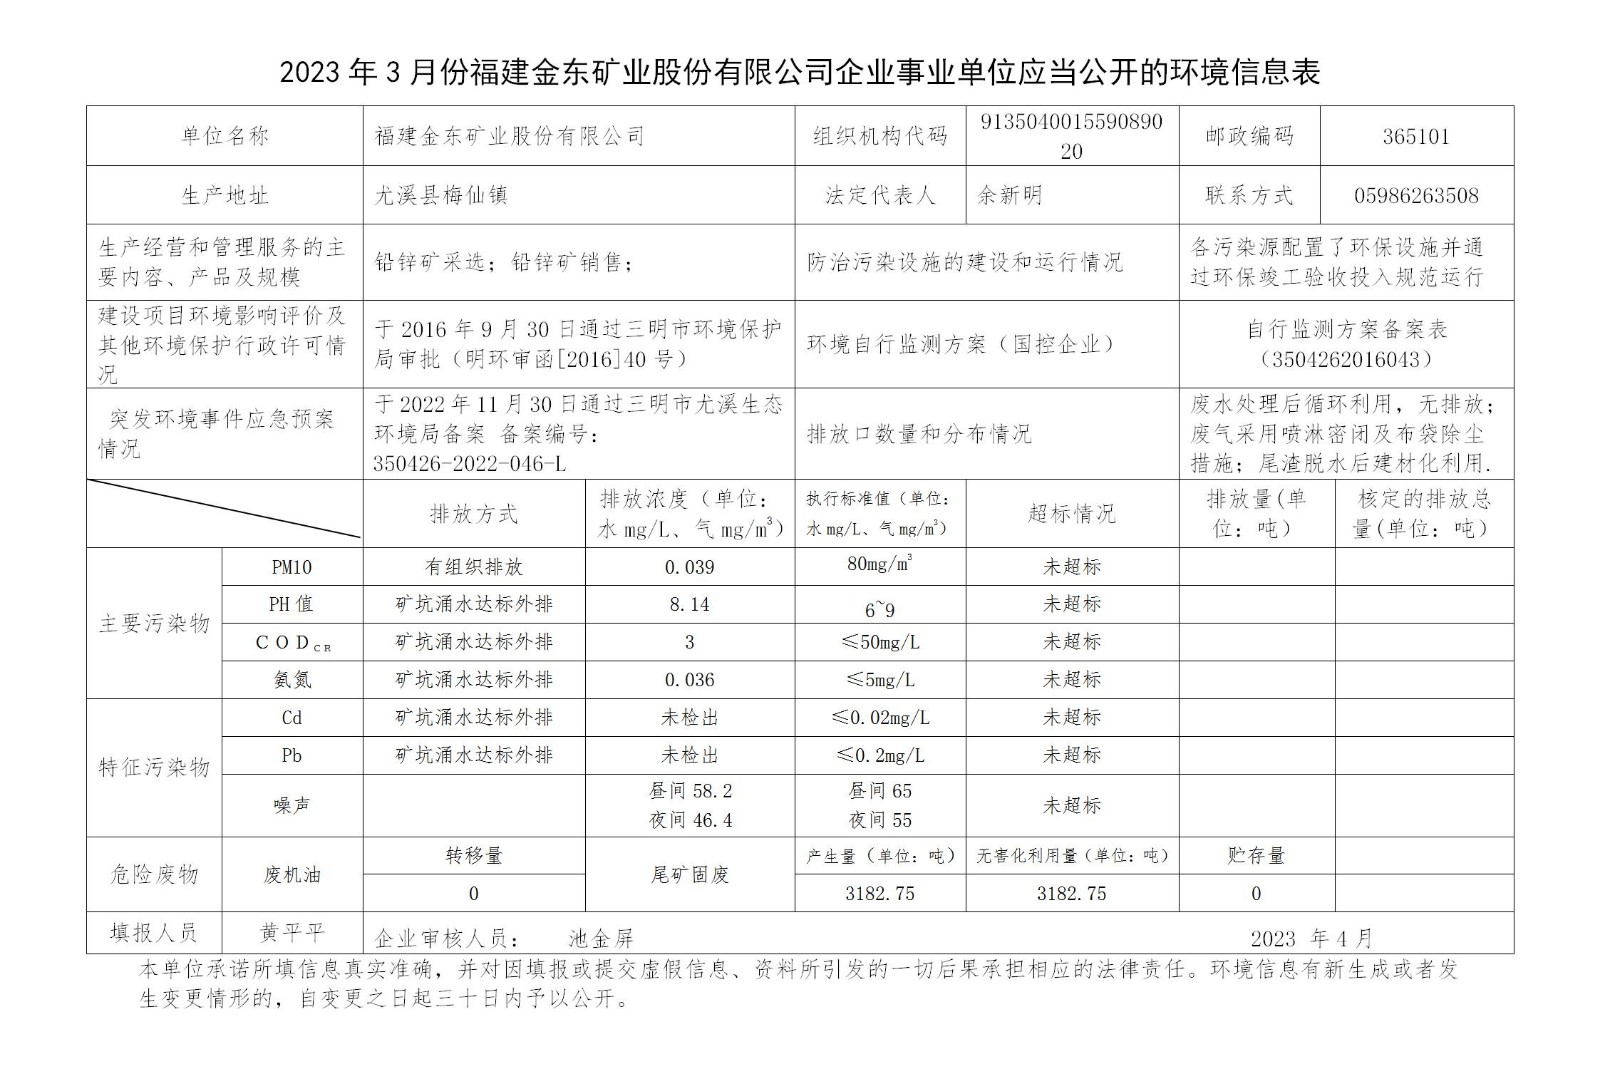 2023年3月份立博(中国)官方网站企业事业单位应当公开的环境信息表_01.jpg